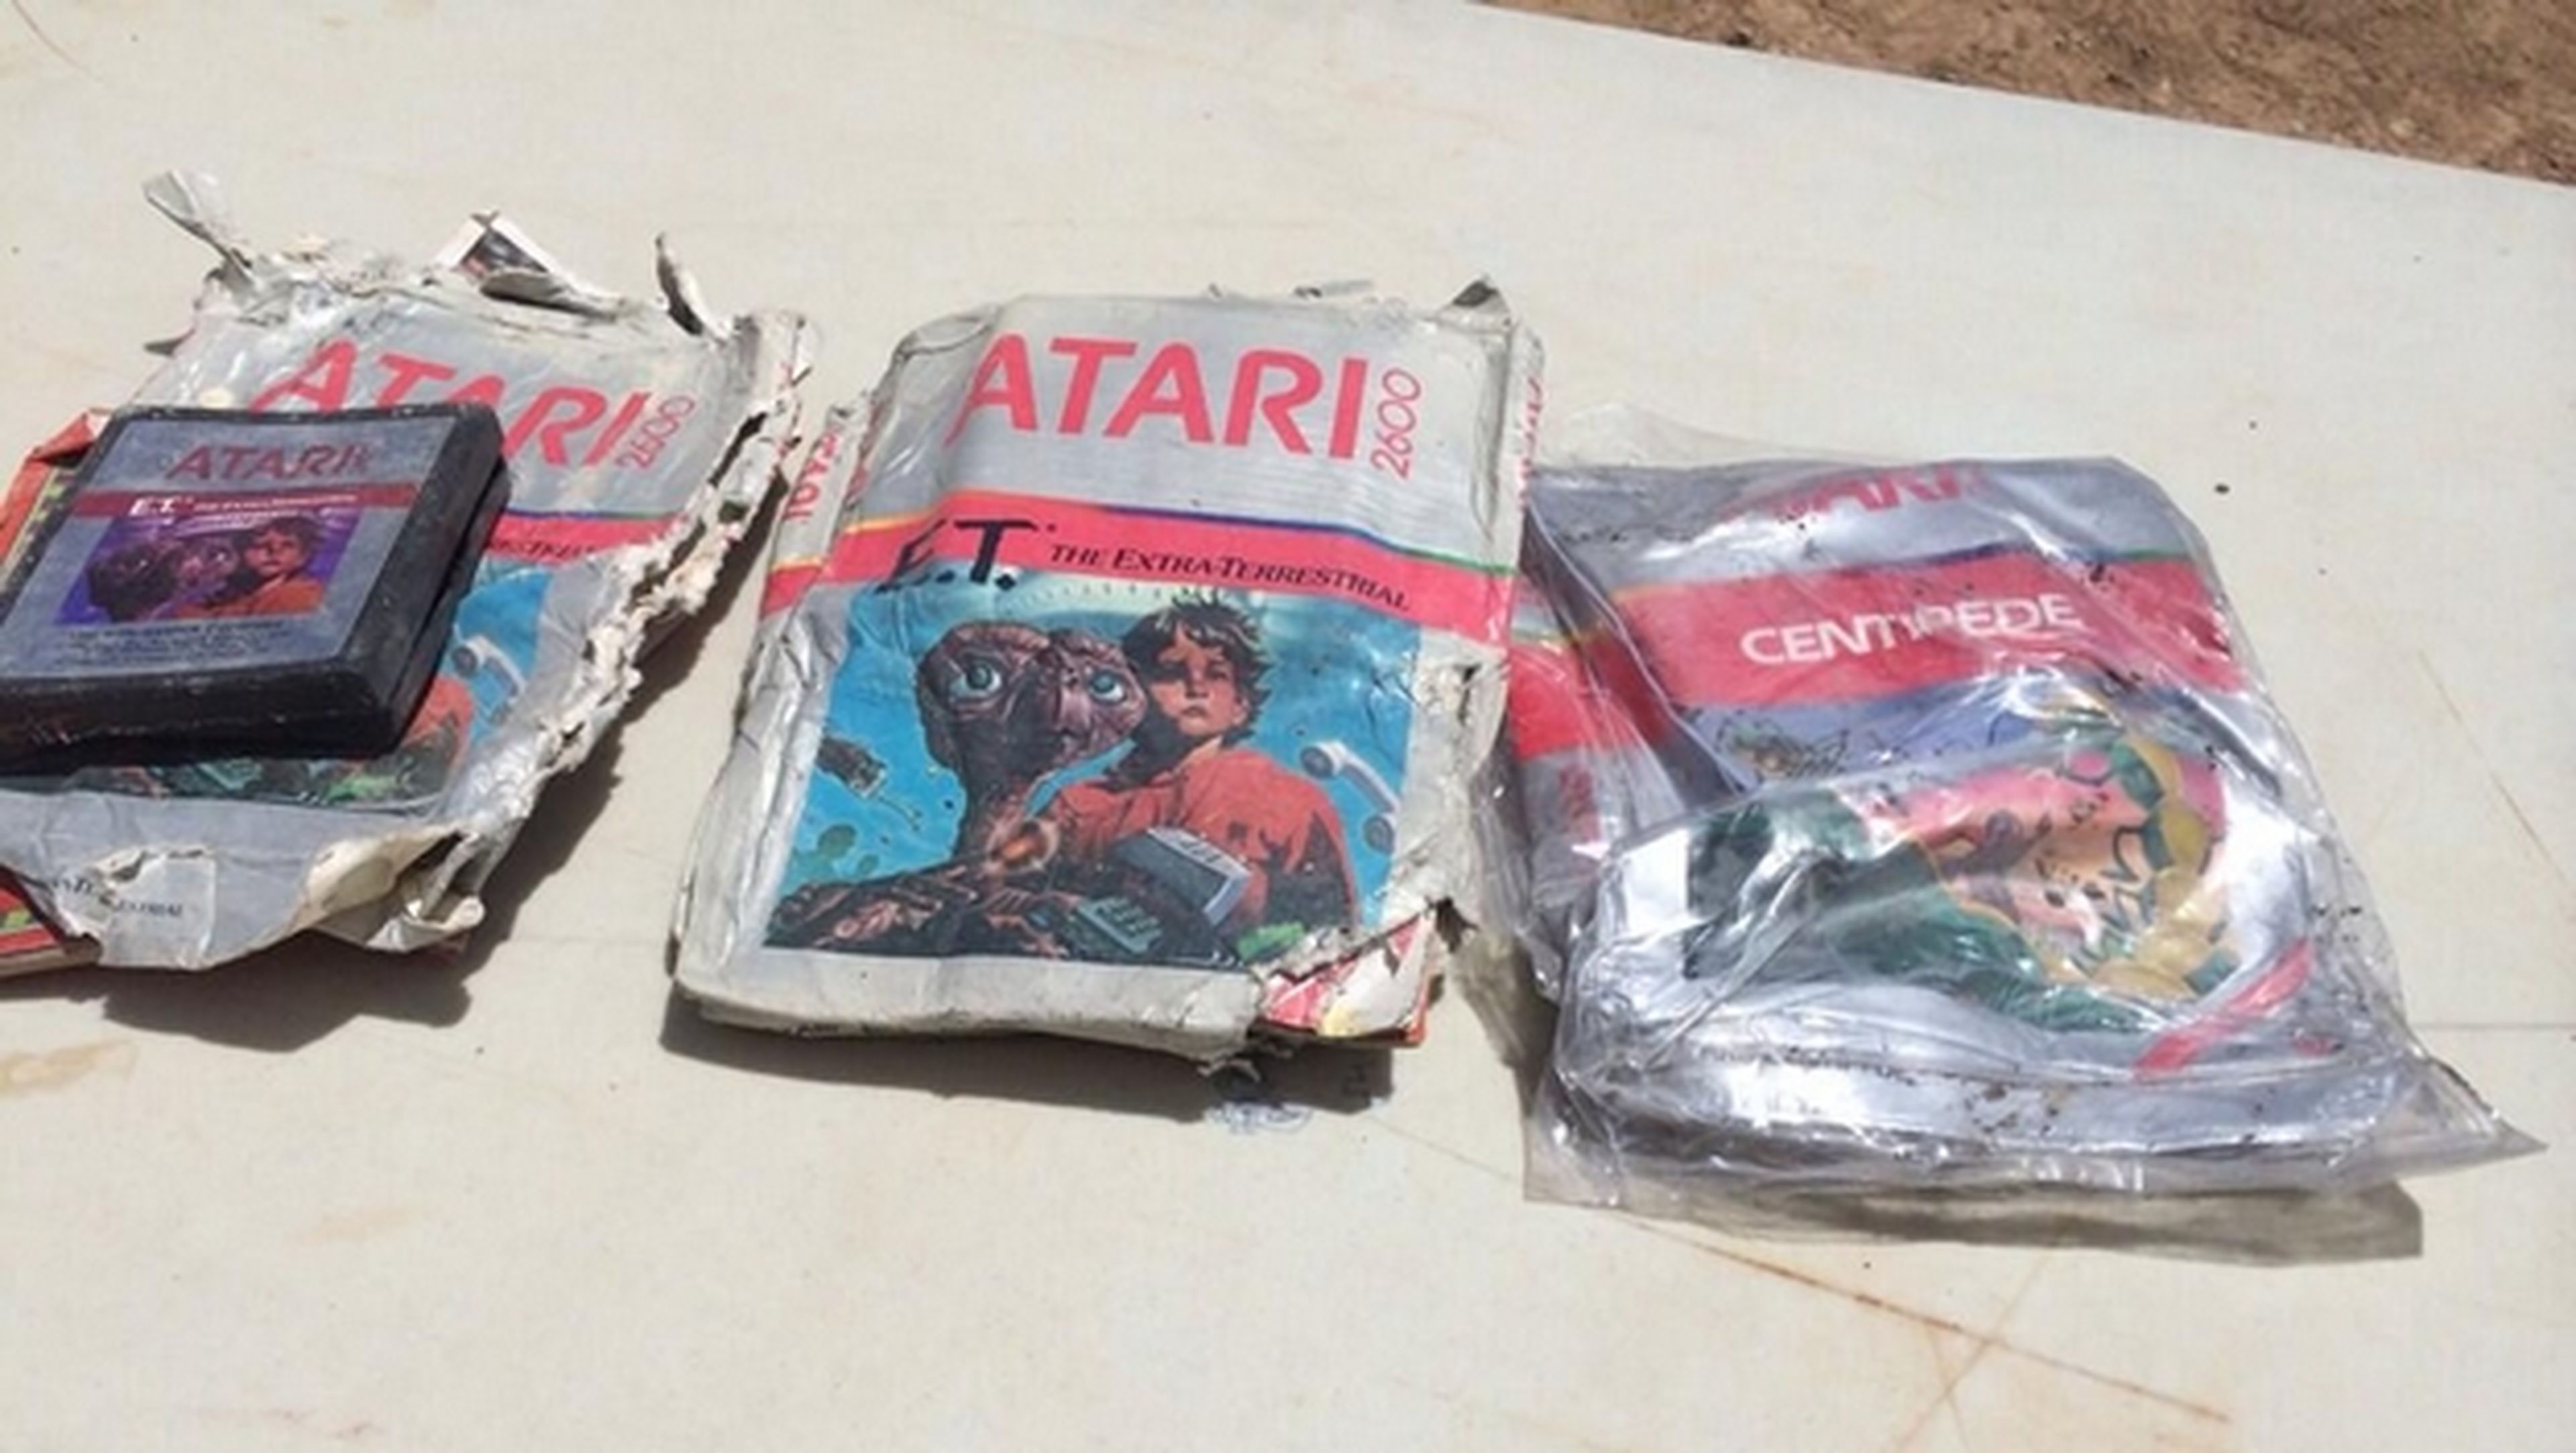 La leyenda urbana se convierte en realidad. Hallan miles de juegos E.T. para la consola Atari 2600 enterrados en el desierto de Alamogordo durante 30 años